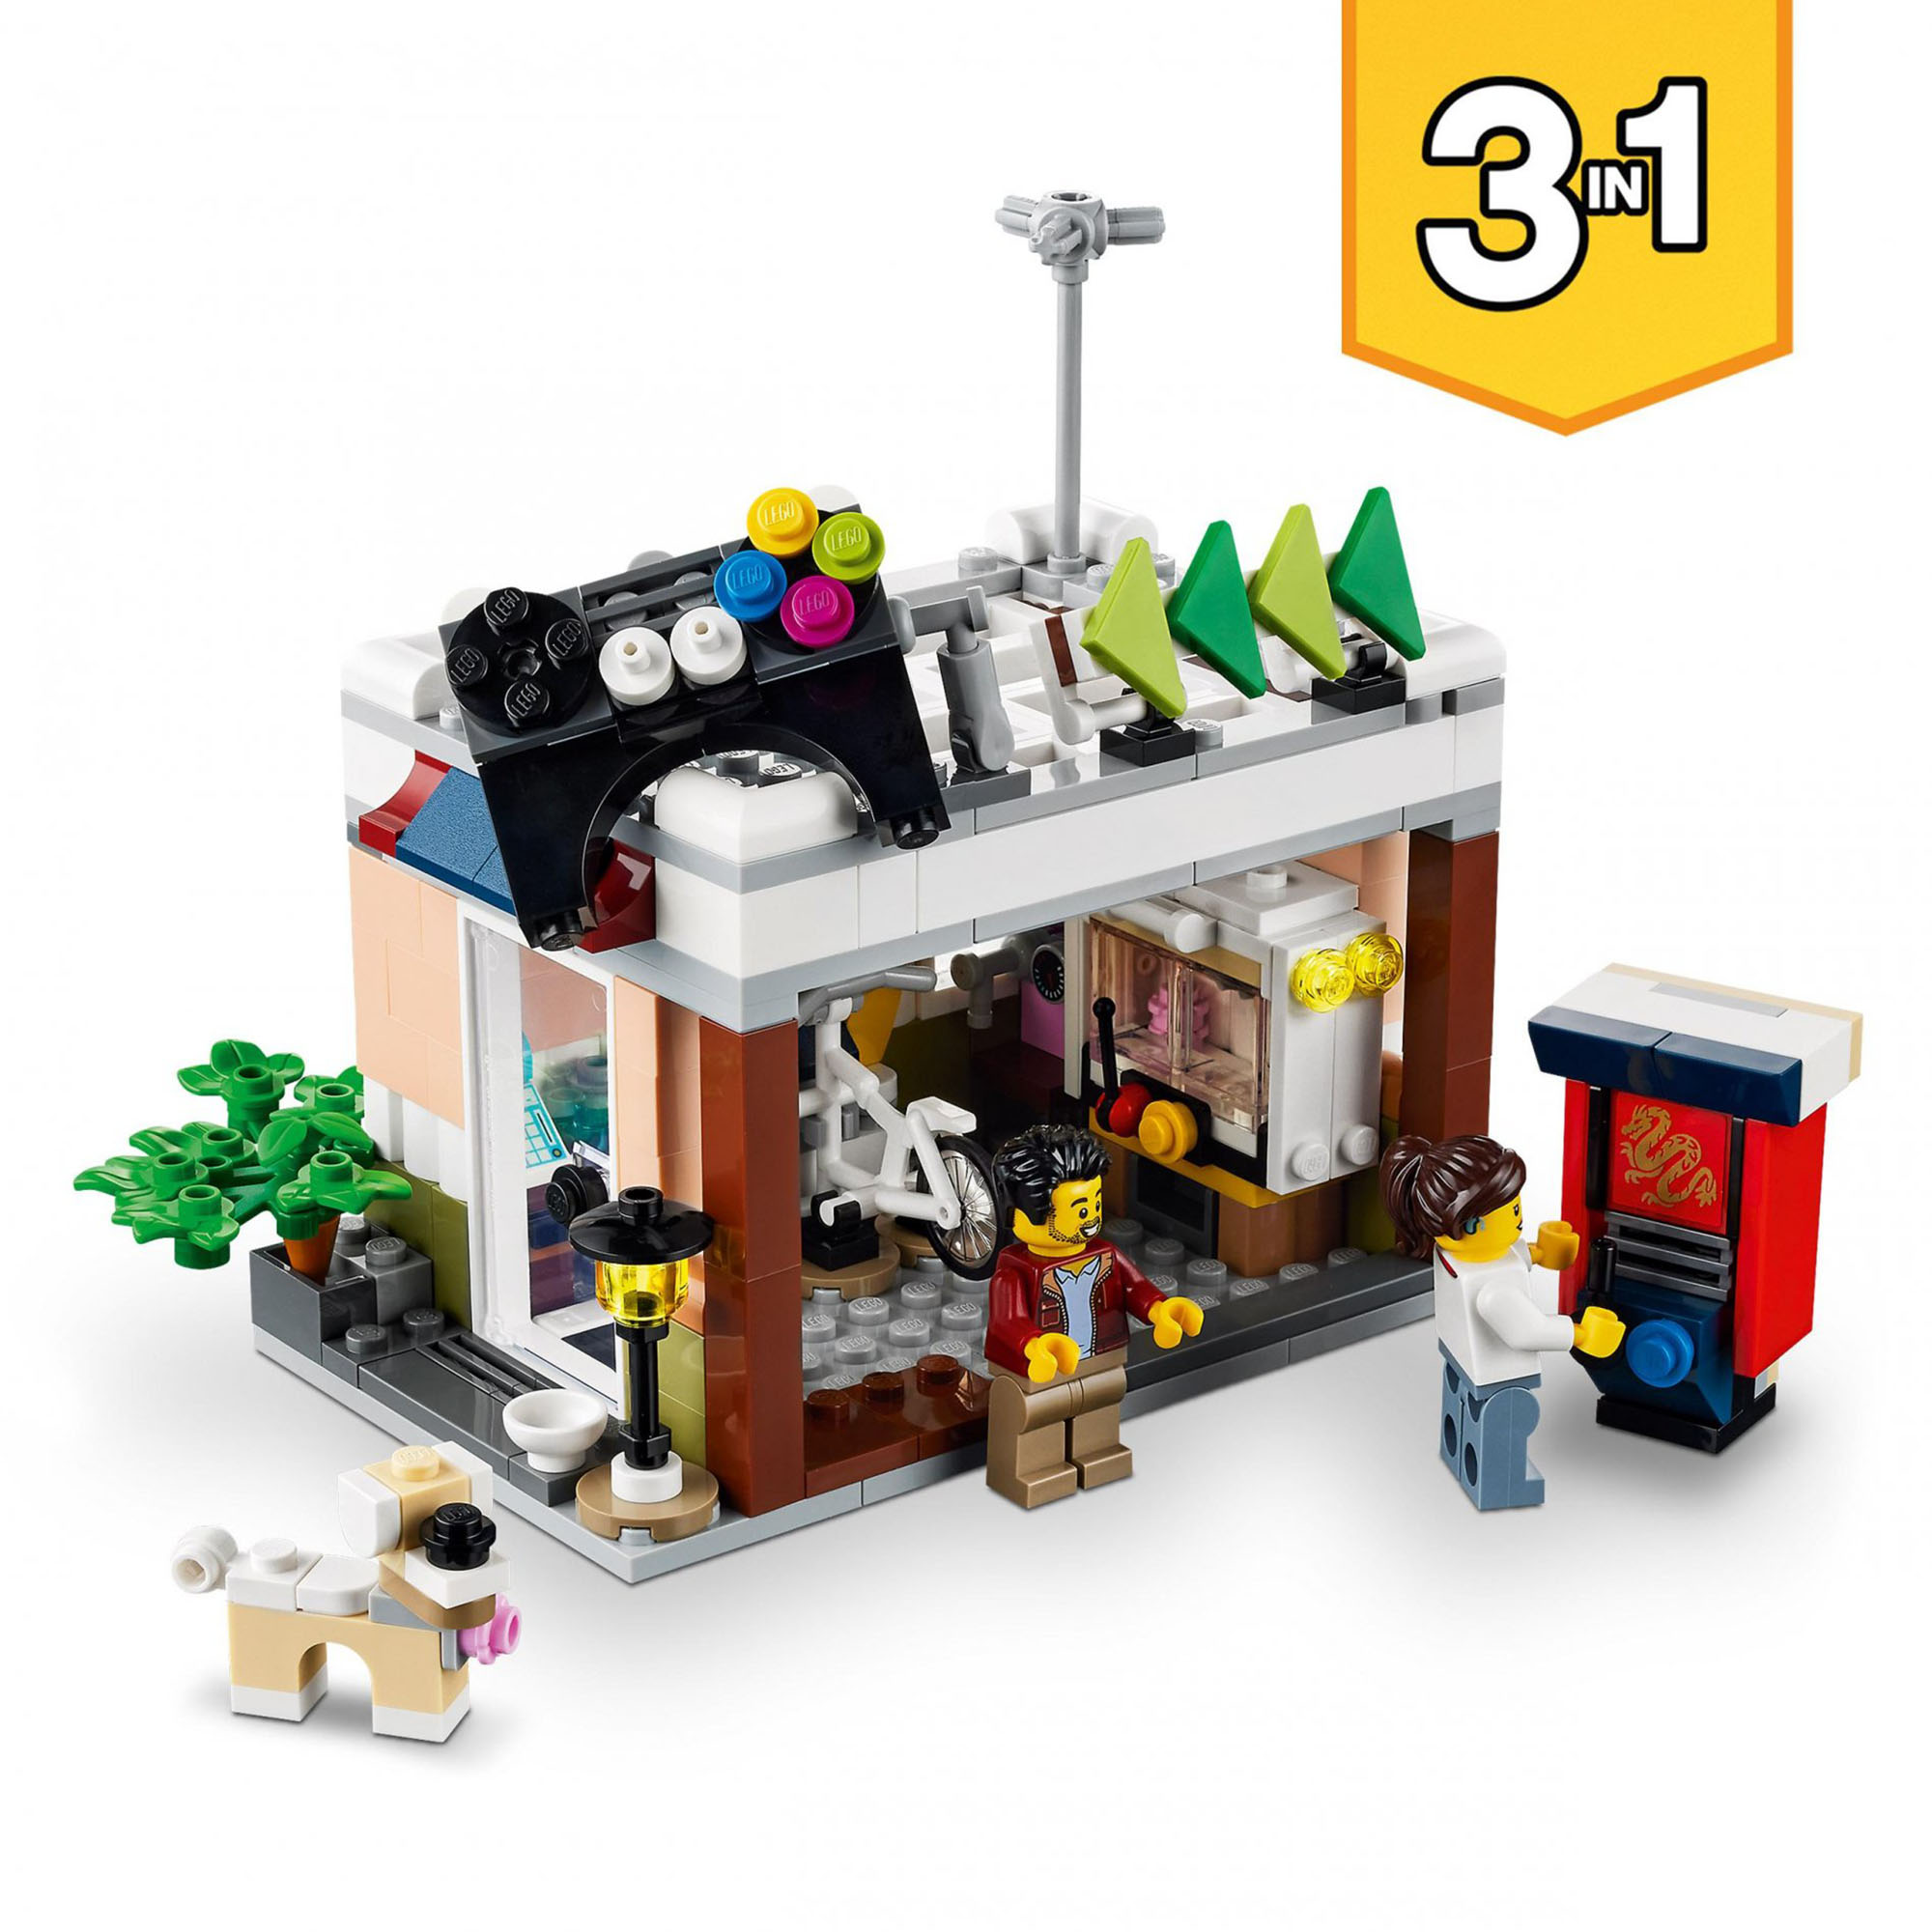 LEGO Creator 3 in 1 Ristorante Noodle Cittadino, Casa Giocattolo con Negozio Bic 31131, , large